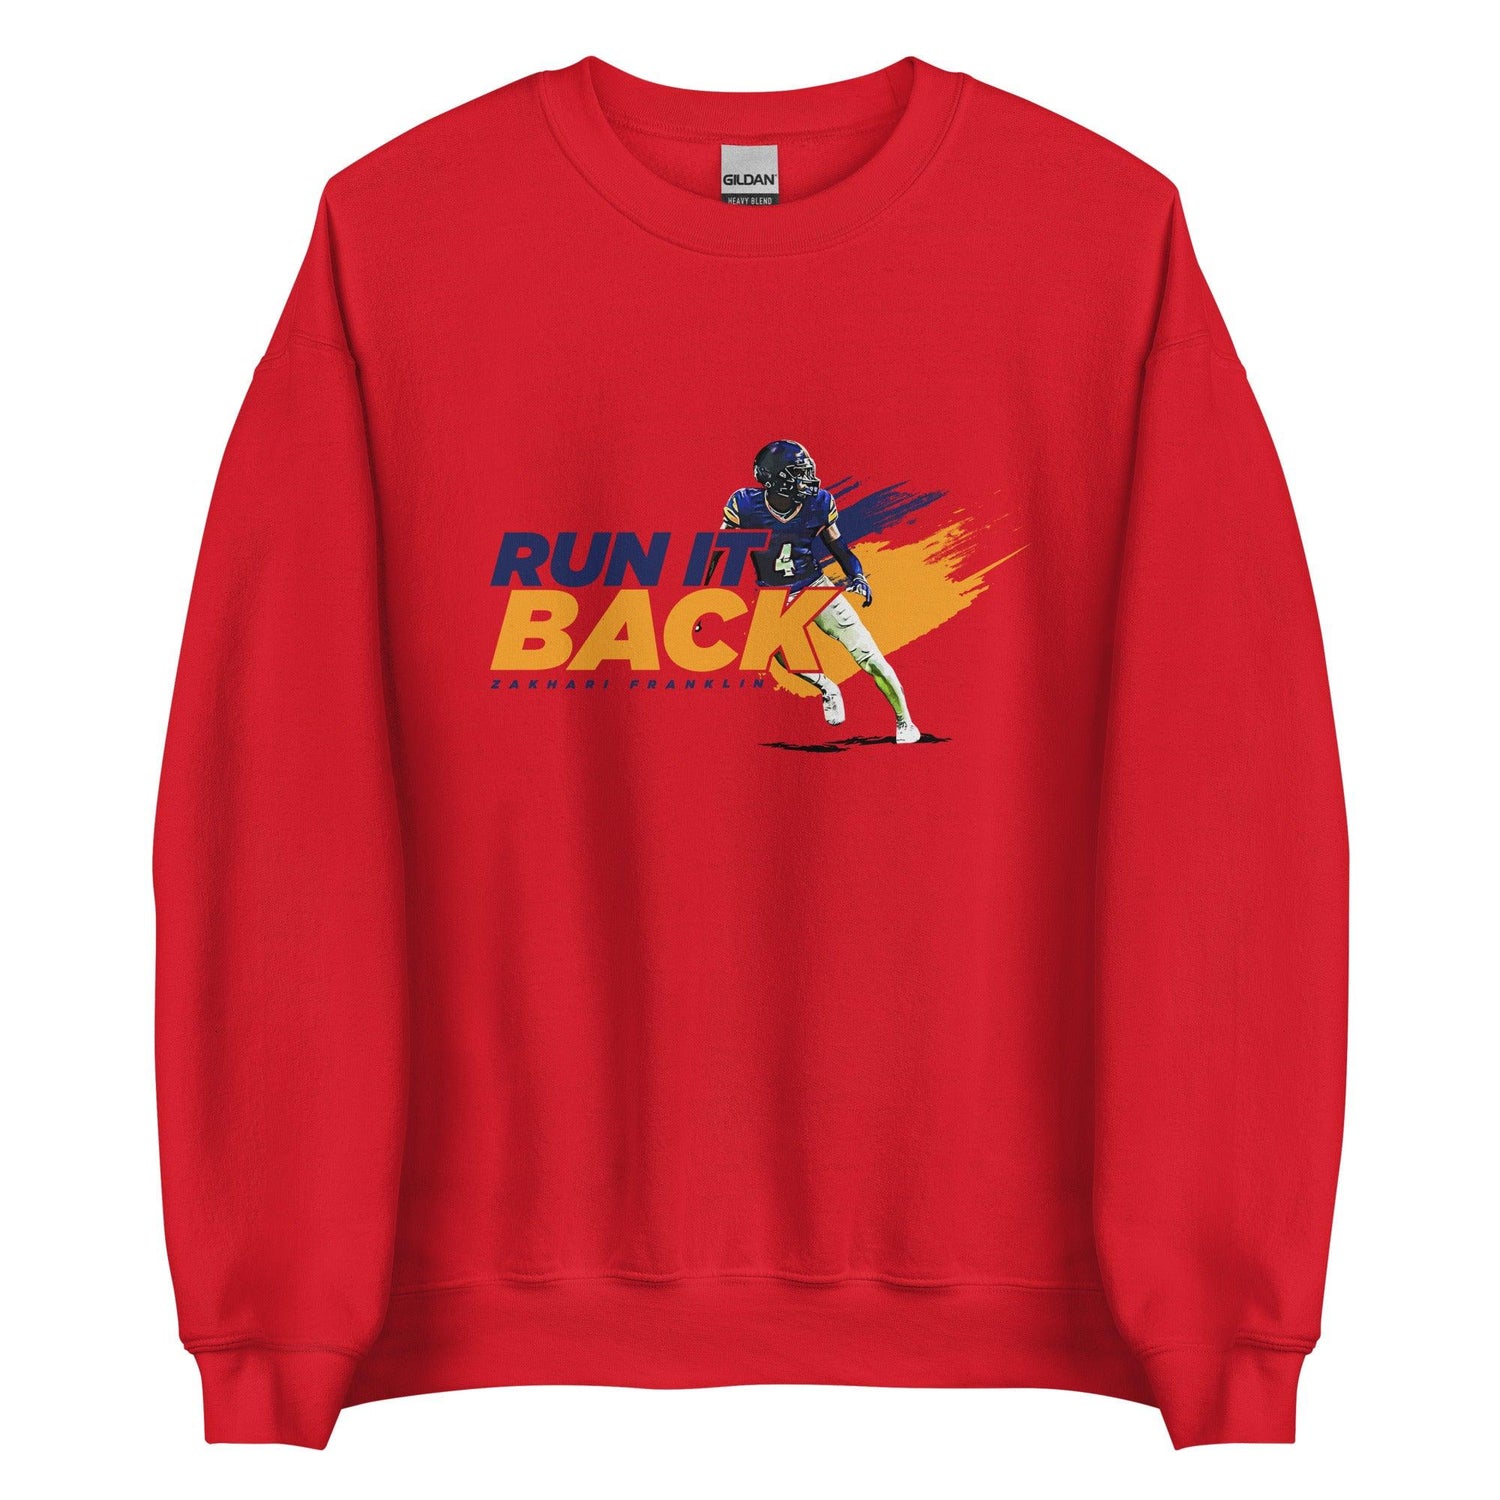 Zakhari Franklin "Run It Back" Sweatshirt - Fan Arch